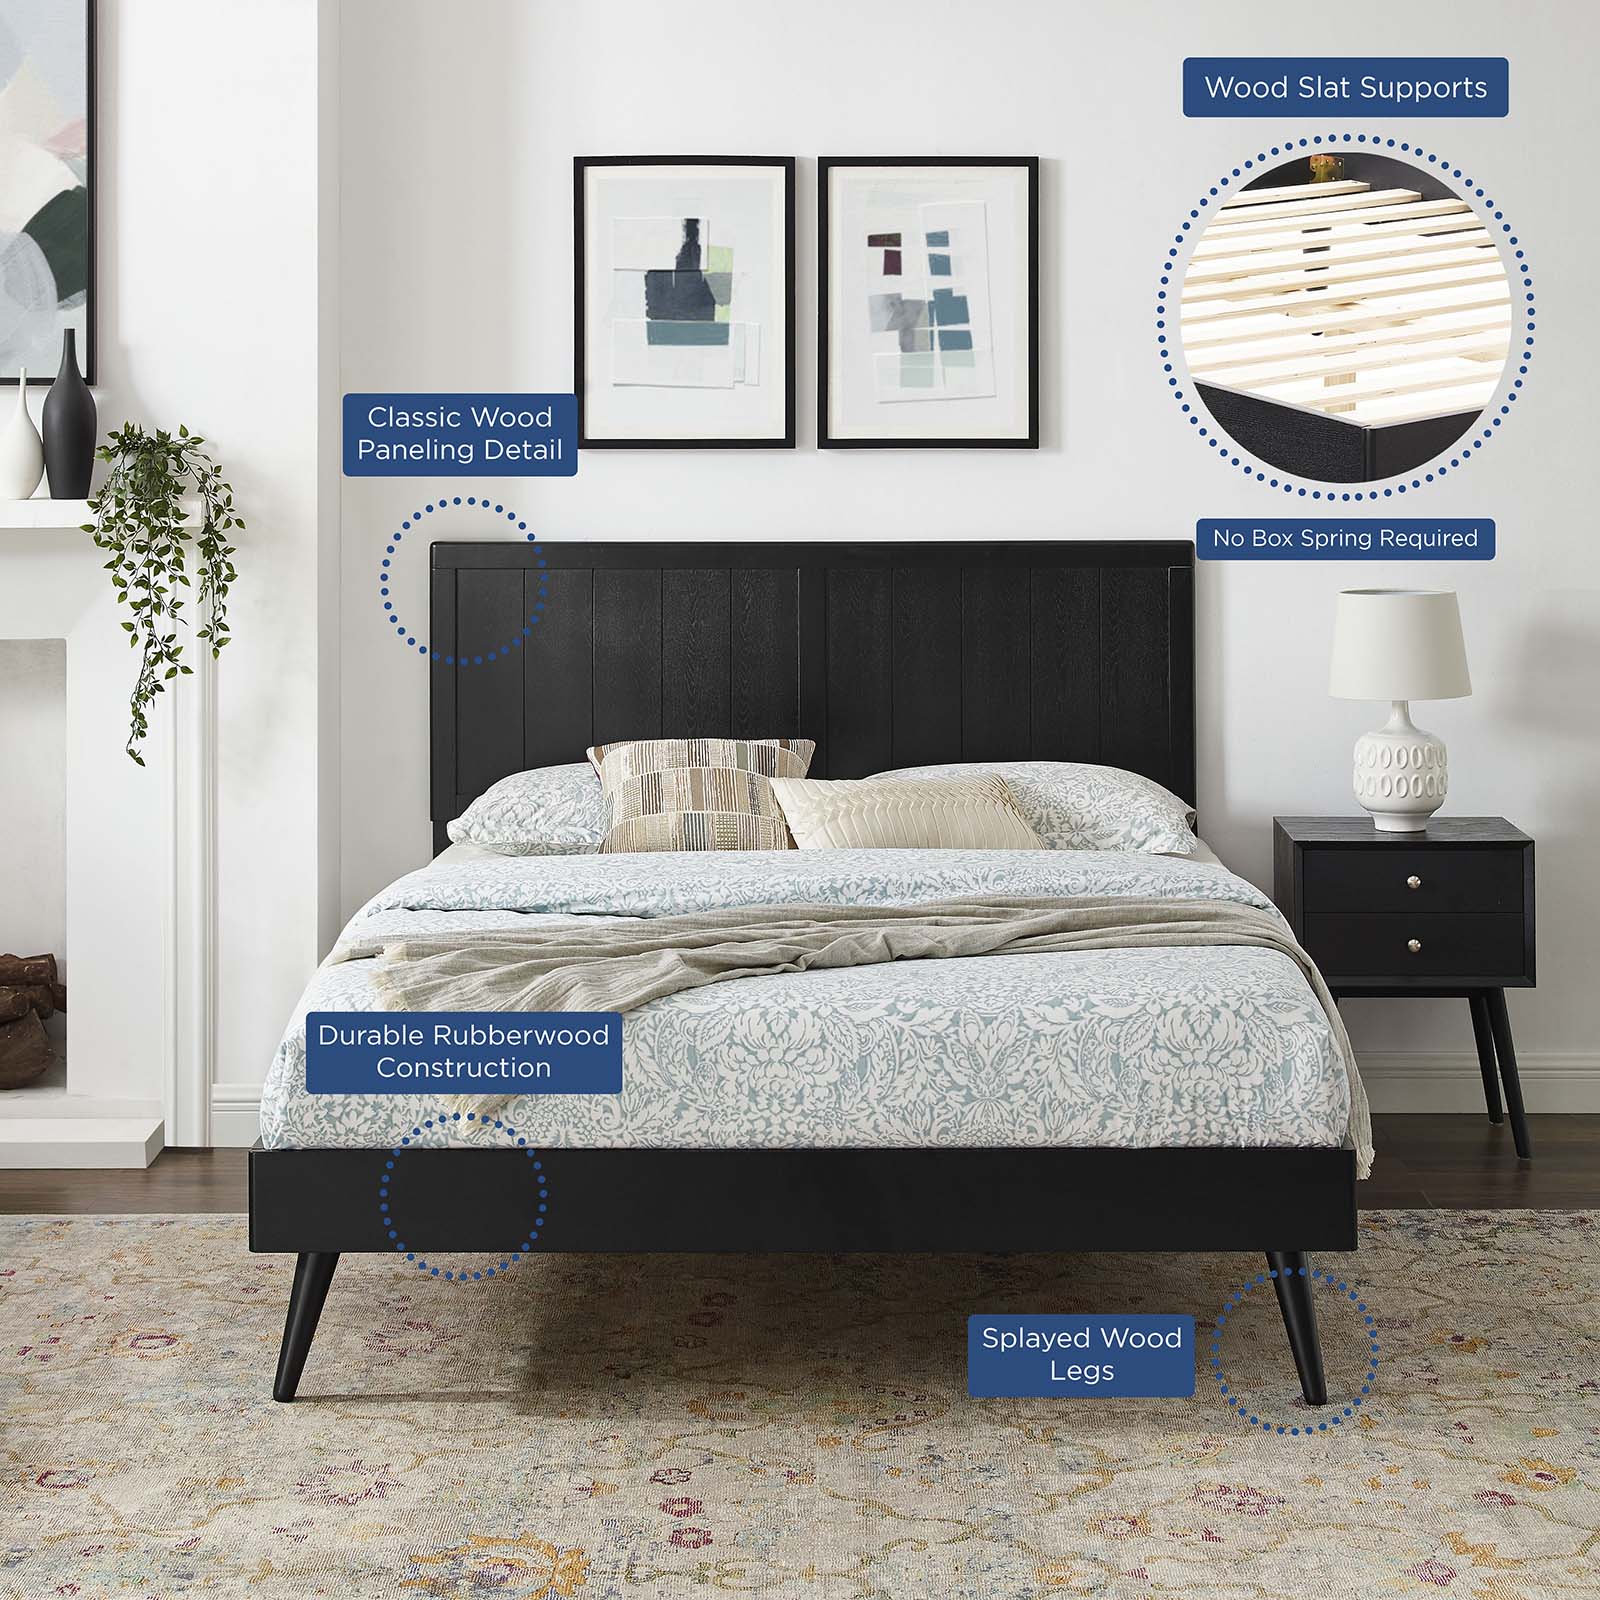 Platform Bed Frame, Full Size, Wood, Black, Modern Contemporary Urban Design, Bedroom Master Guest Suite - image 4 of 10